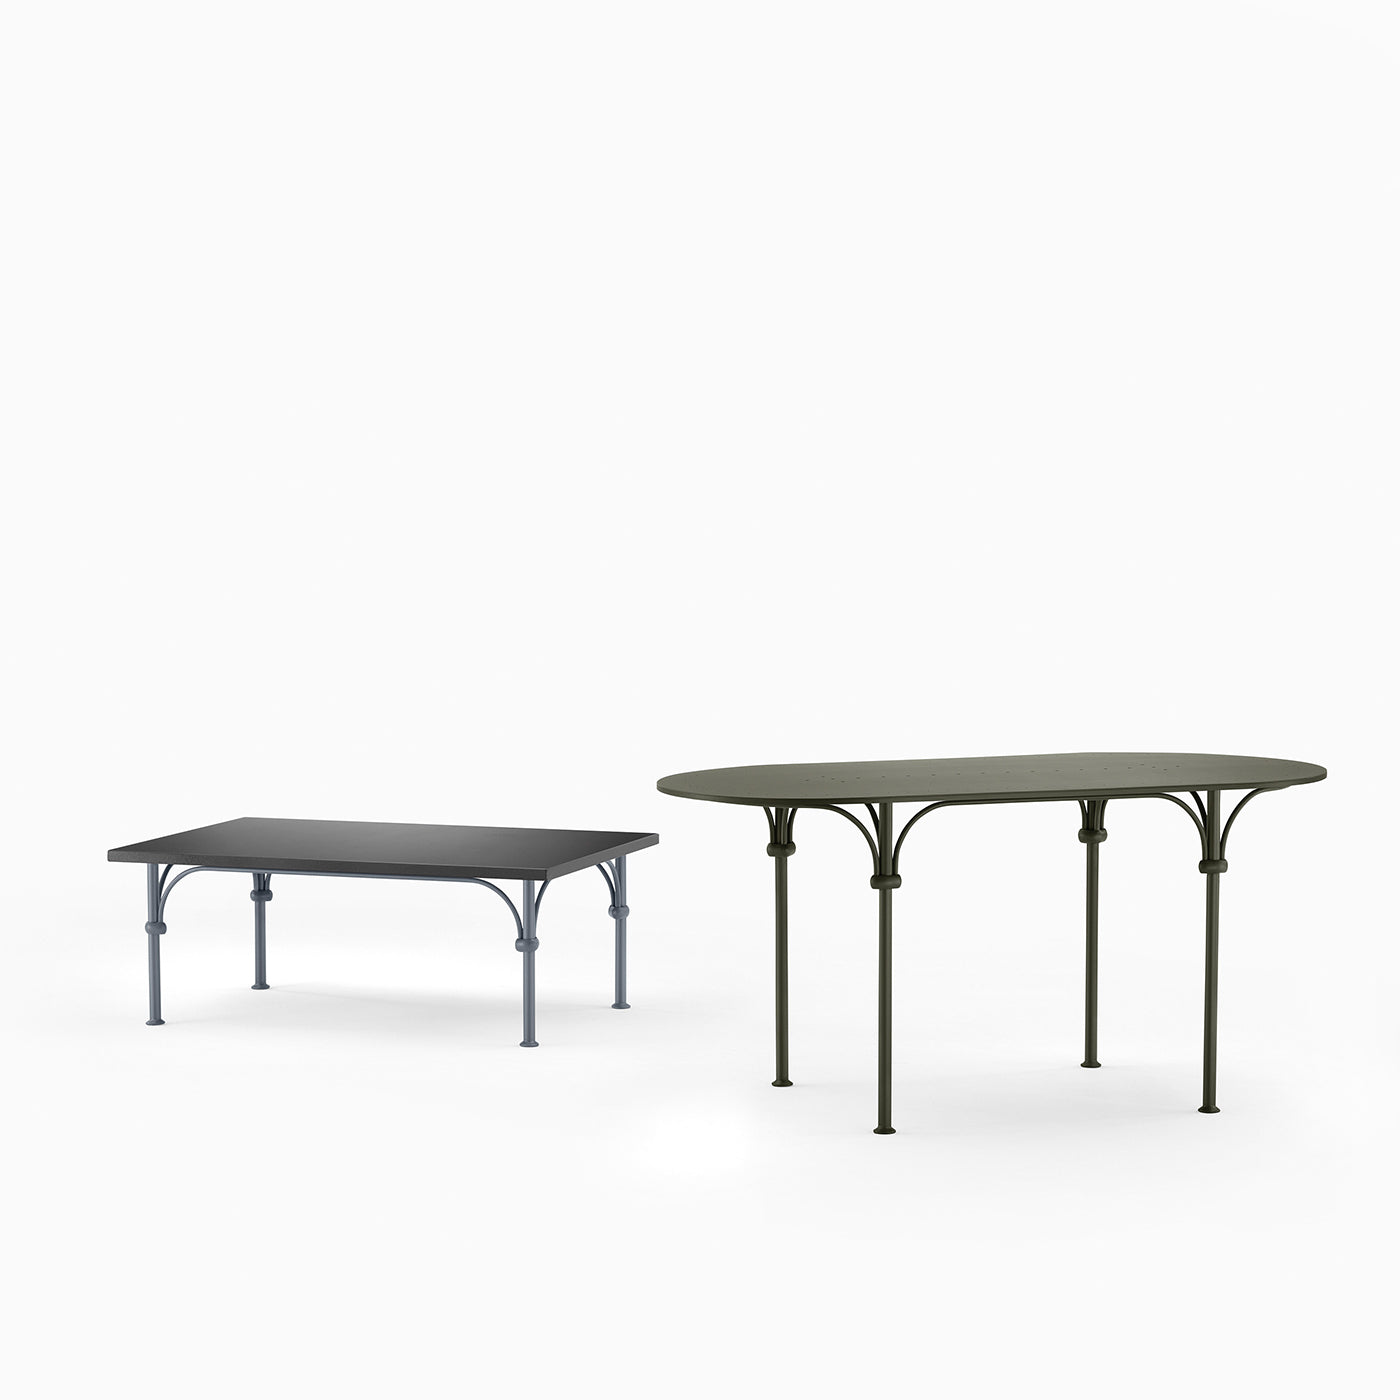 Tavolario Table basse rectangulaire en fer forgé gris - Vue alternative 1